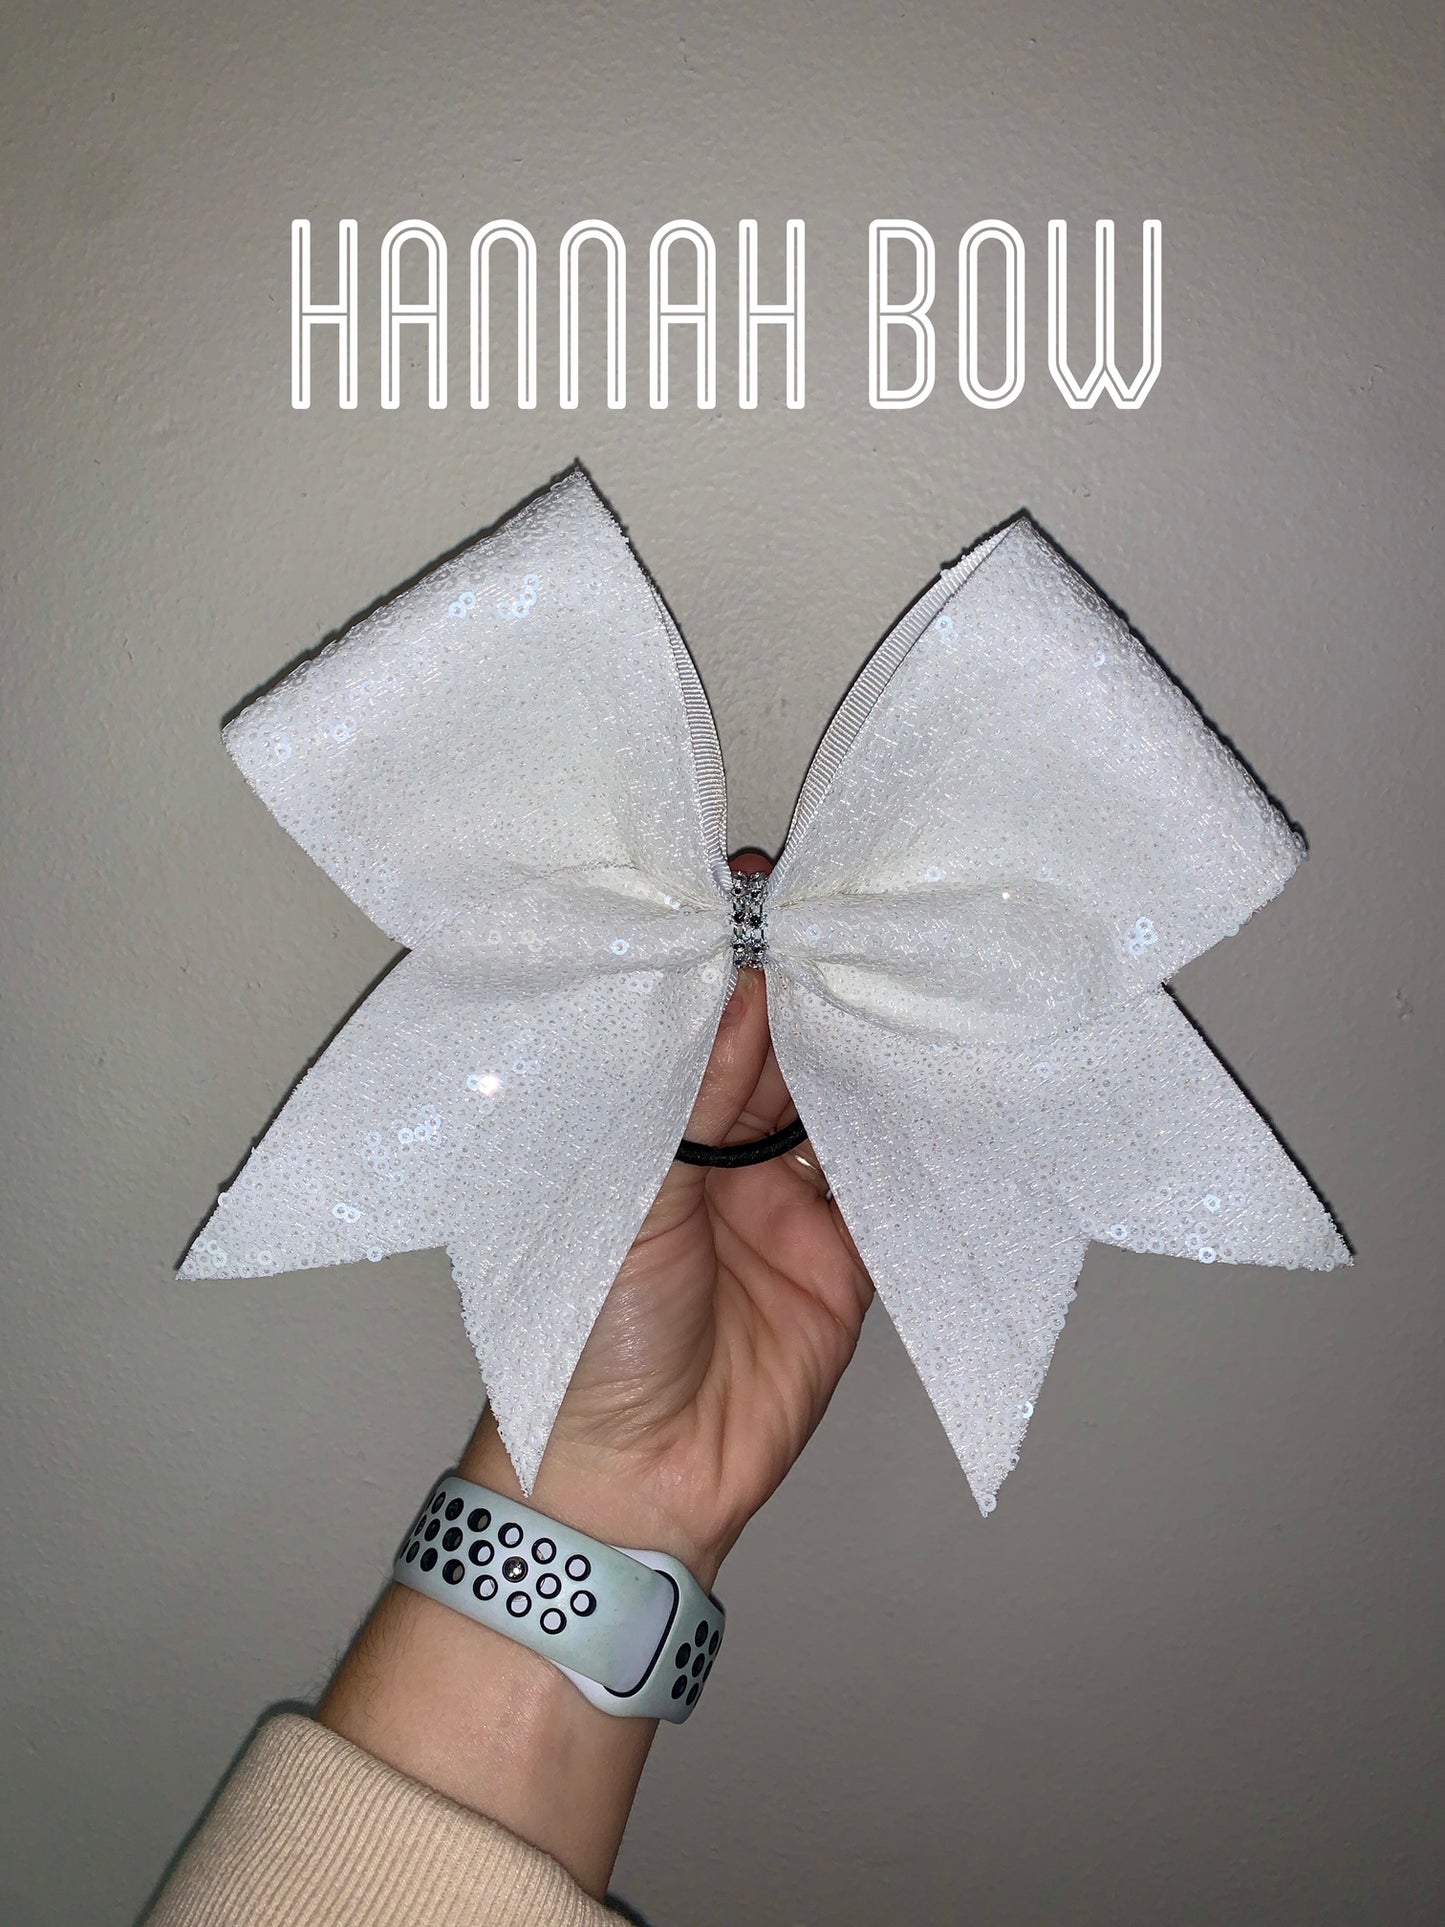 Hannah Bow